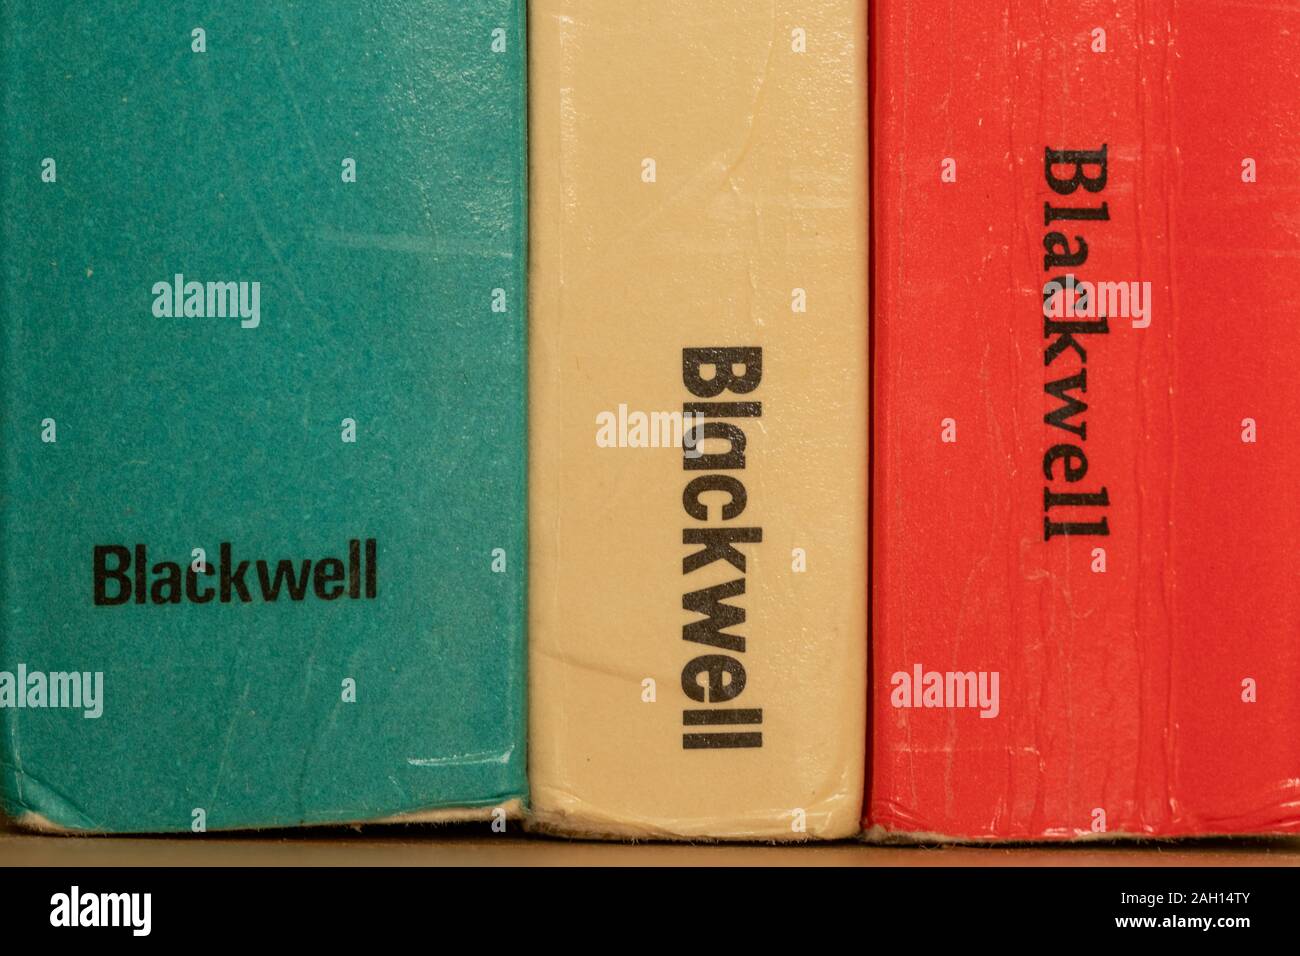 Close-up of books published by Blackwell, publisher, publishers, publishing Stock Photo